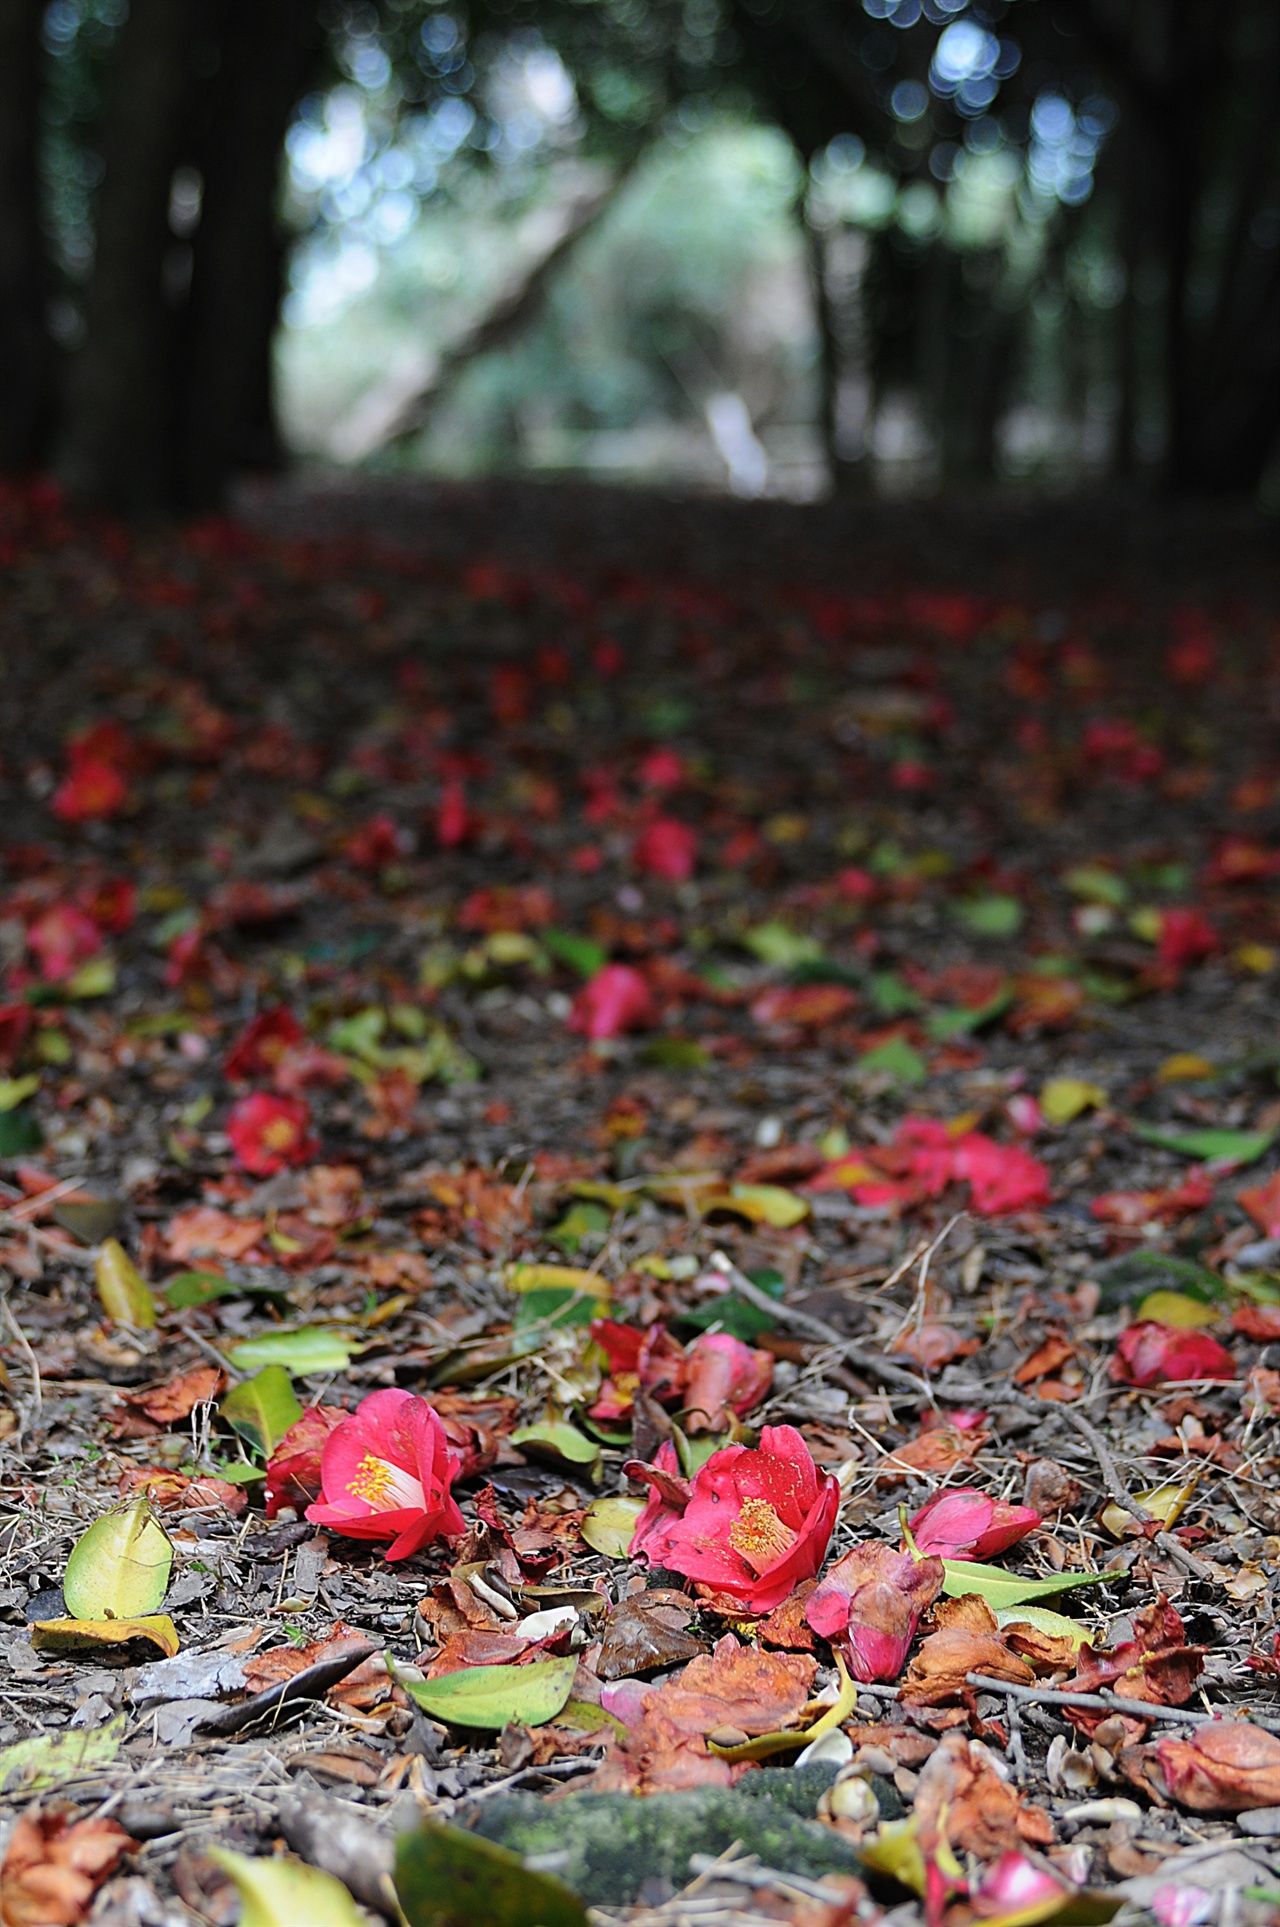 3월 하순이면 동백숲 바닥에는 송이째 툭 떨어진 동백꽃이 붉은 융단을 이룬다. 